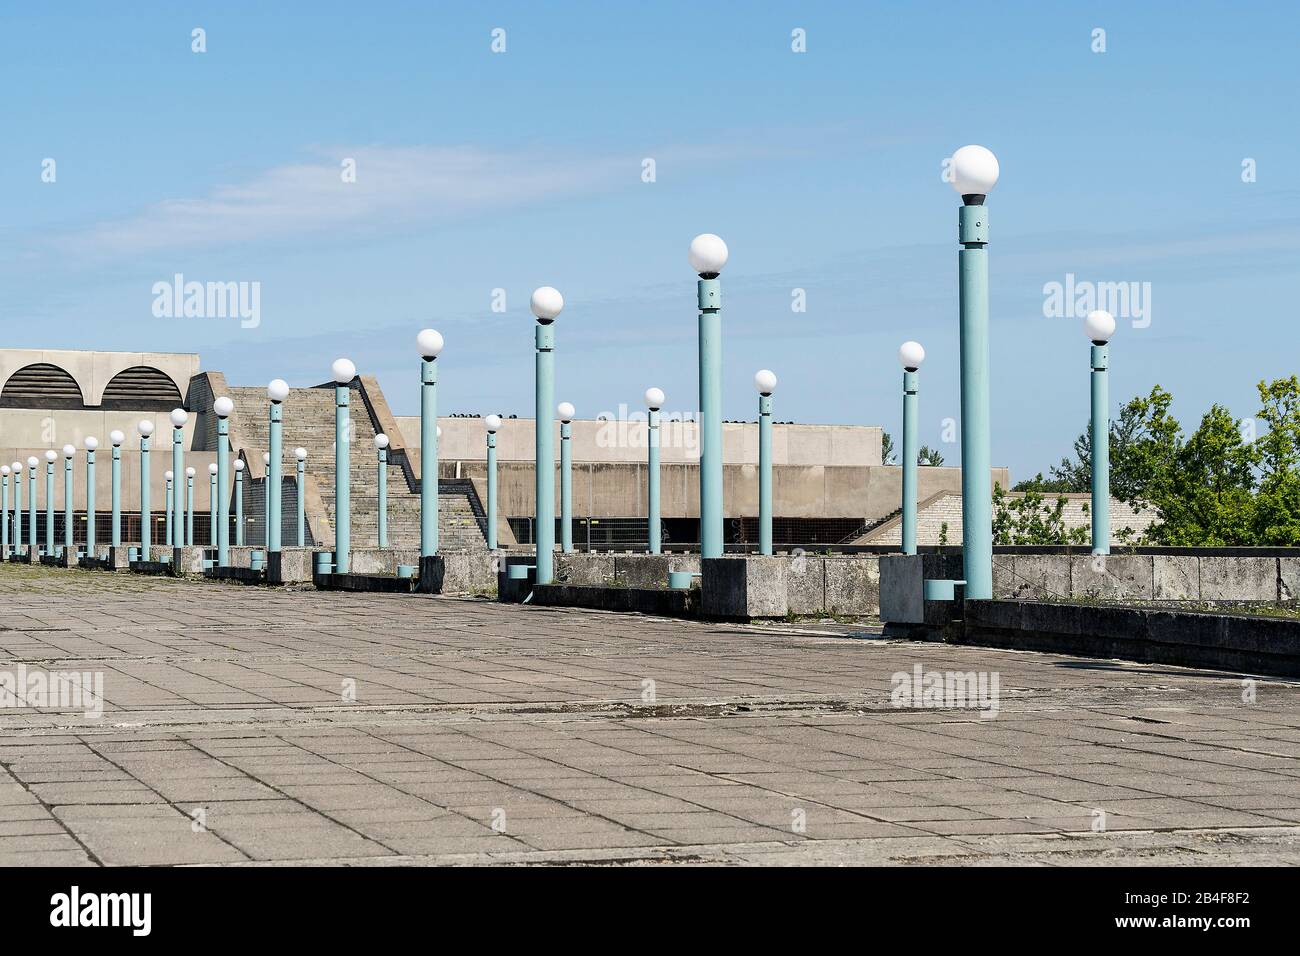 Tallinn, Linnahall, Promenade zur ehemalien Stadthalle, Gebaut 1980 anläßlich der olympischen Spiele a Moskau Foto Stock